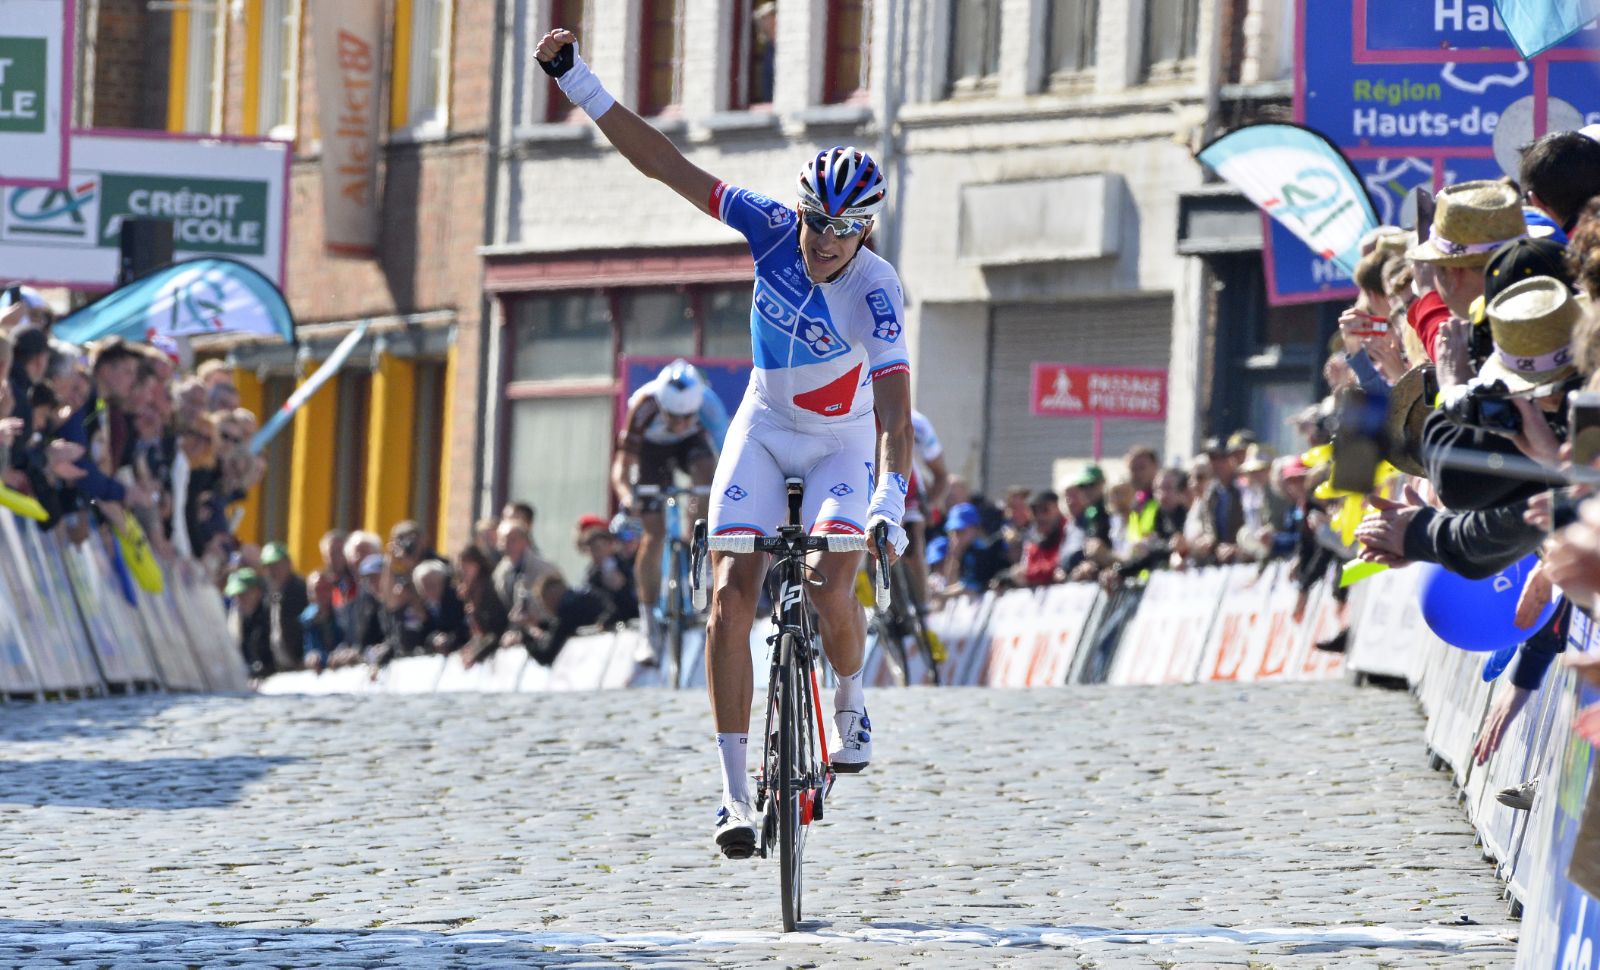 Praėjusią savaitę sėkmingai lenktynėse Prancūzijoje pasirodęs Lietuvos dviratininkas Ignatas Konovalovas FDJ reitinge iš 655-os vietos šoktelėjo į 326-ą.